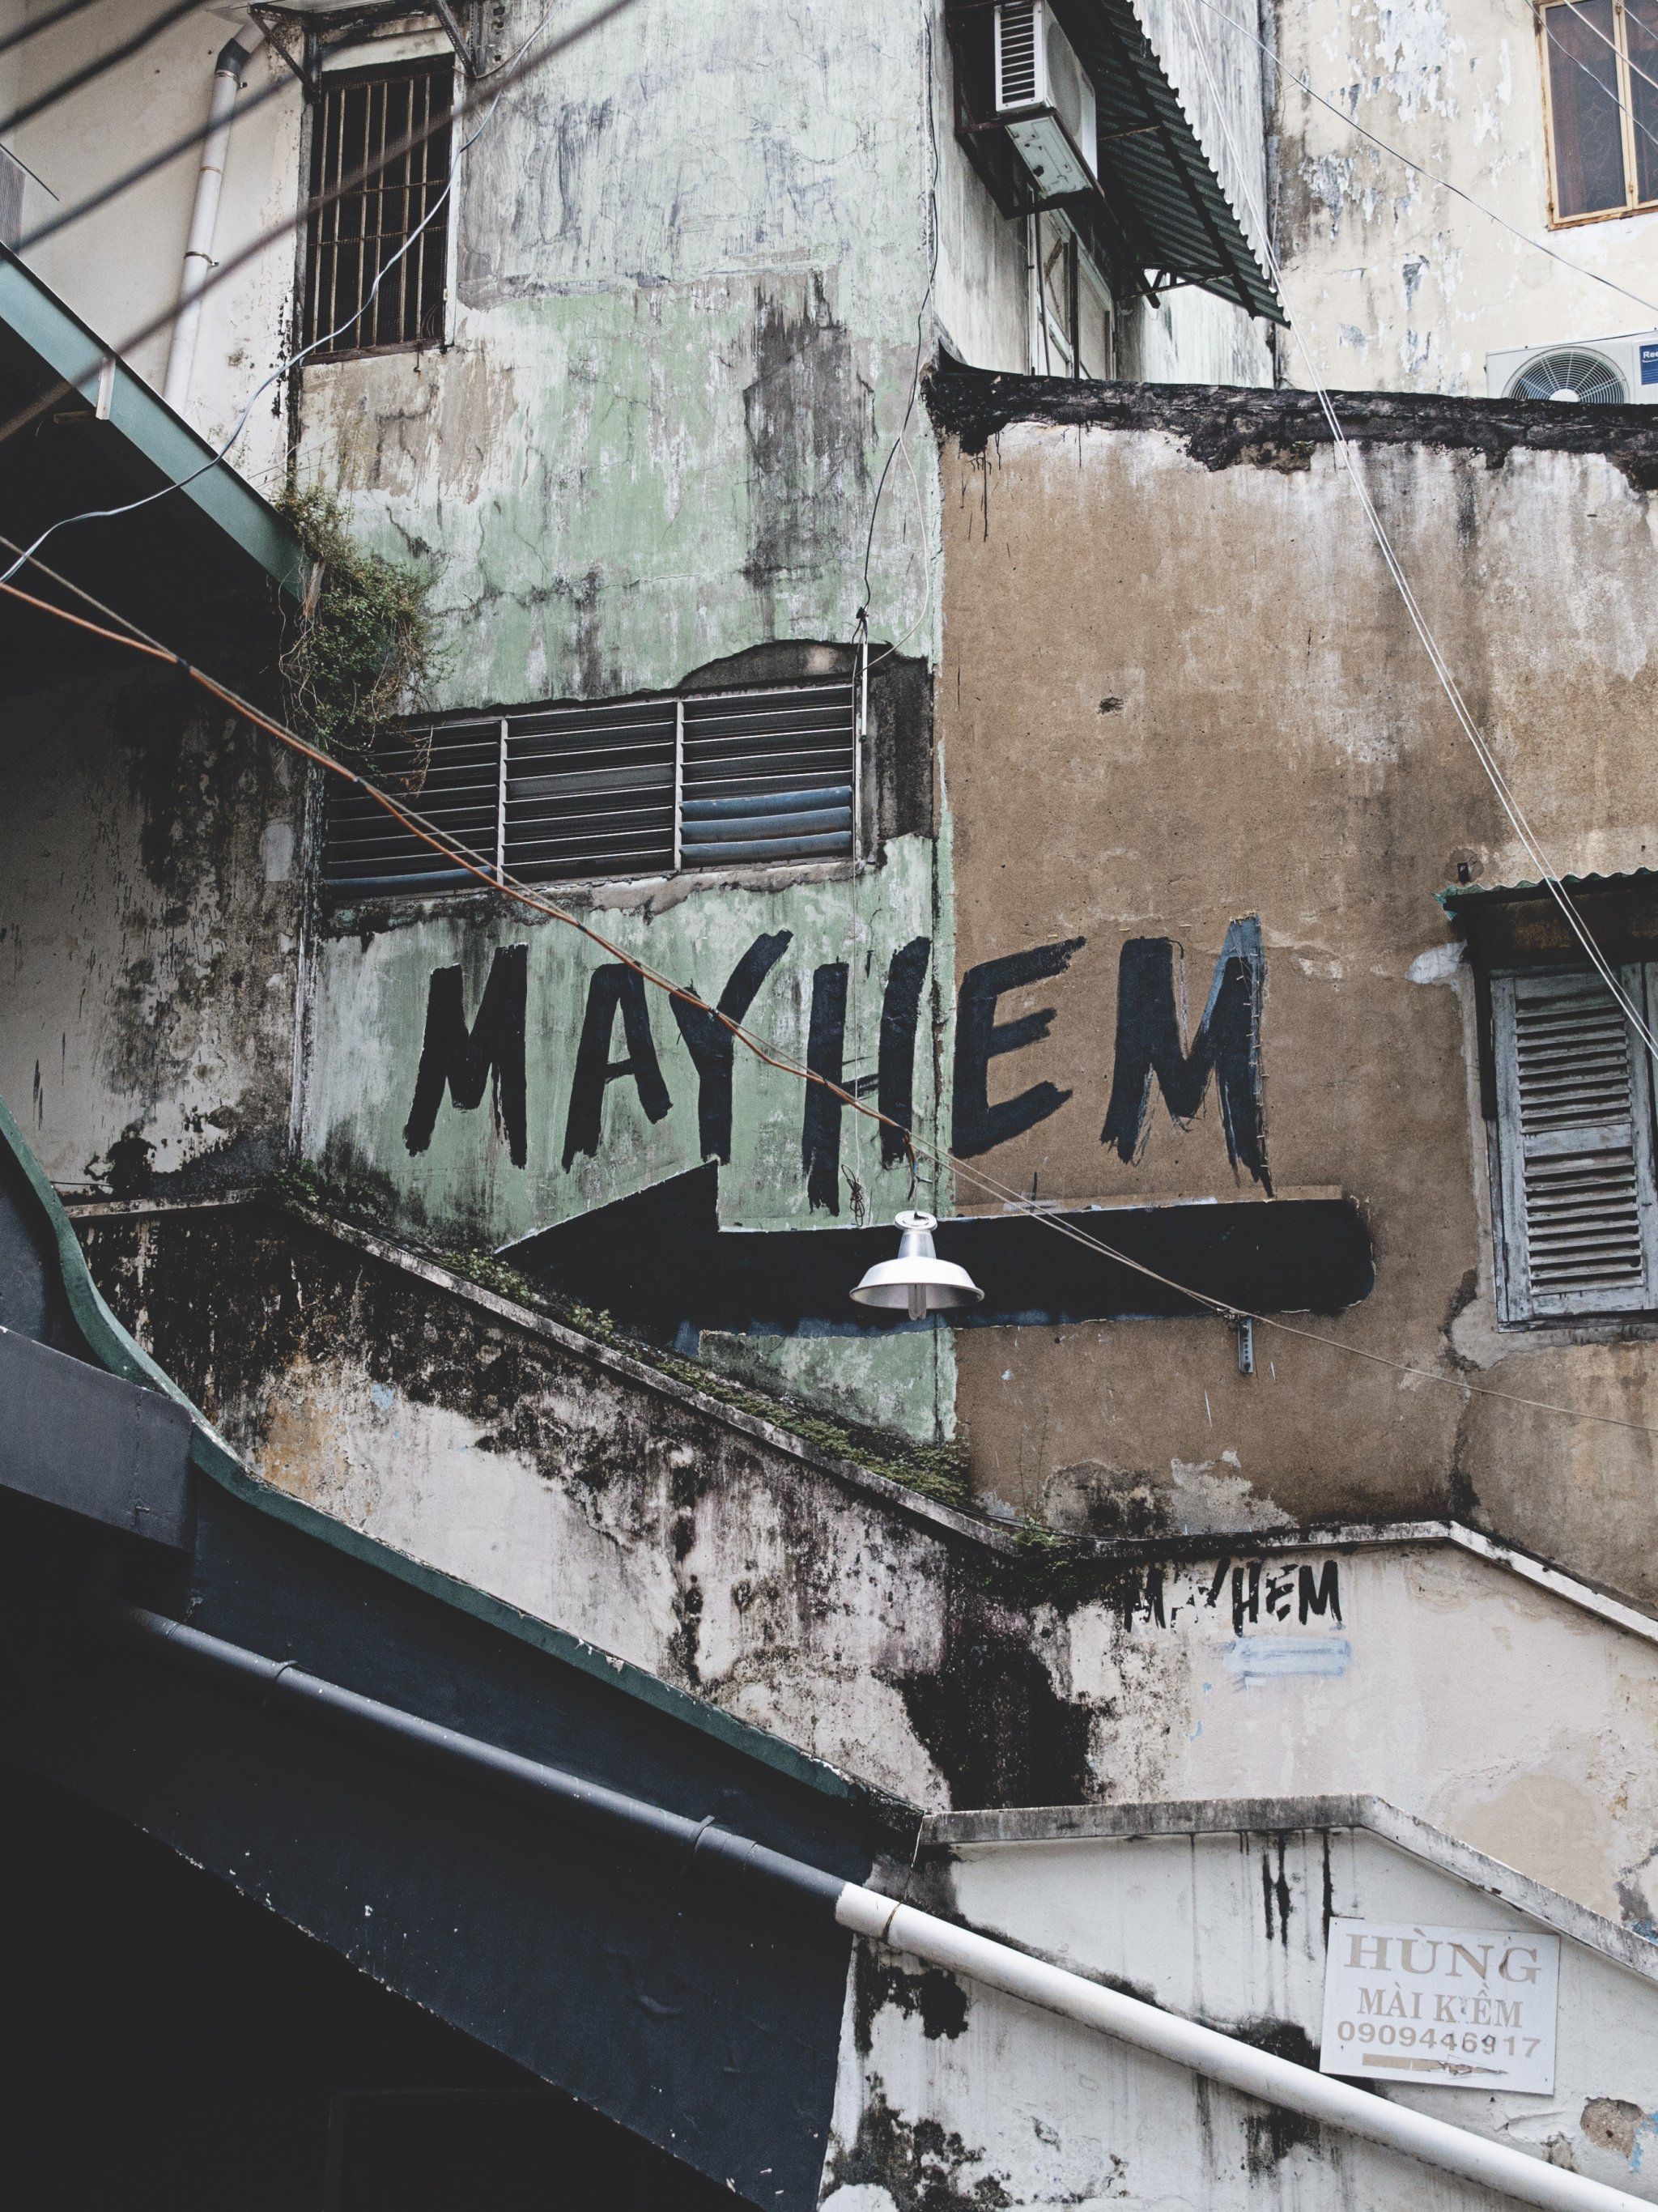 Mayhem Graffiti Wallpaper, Android & Desktop Background